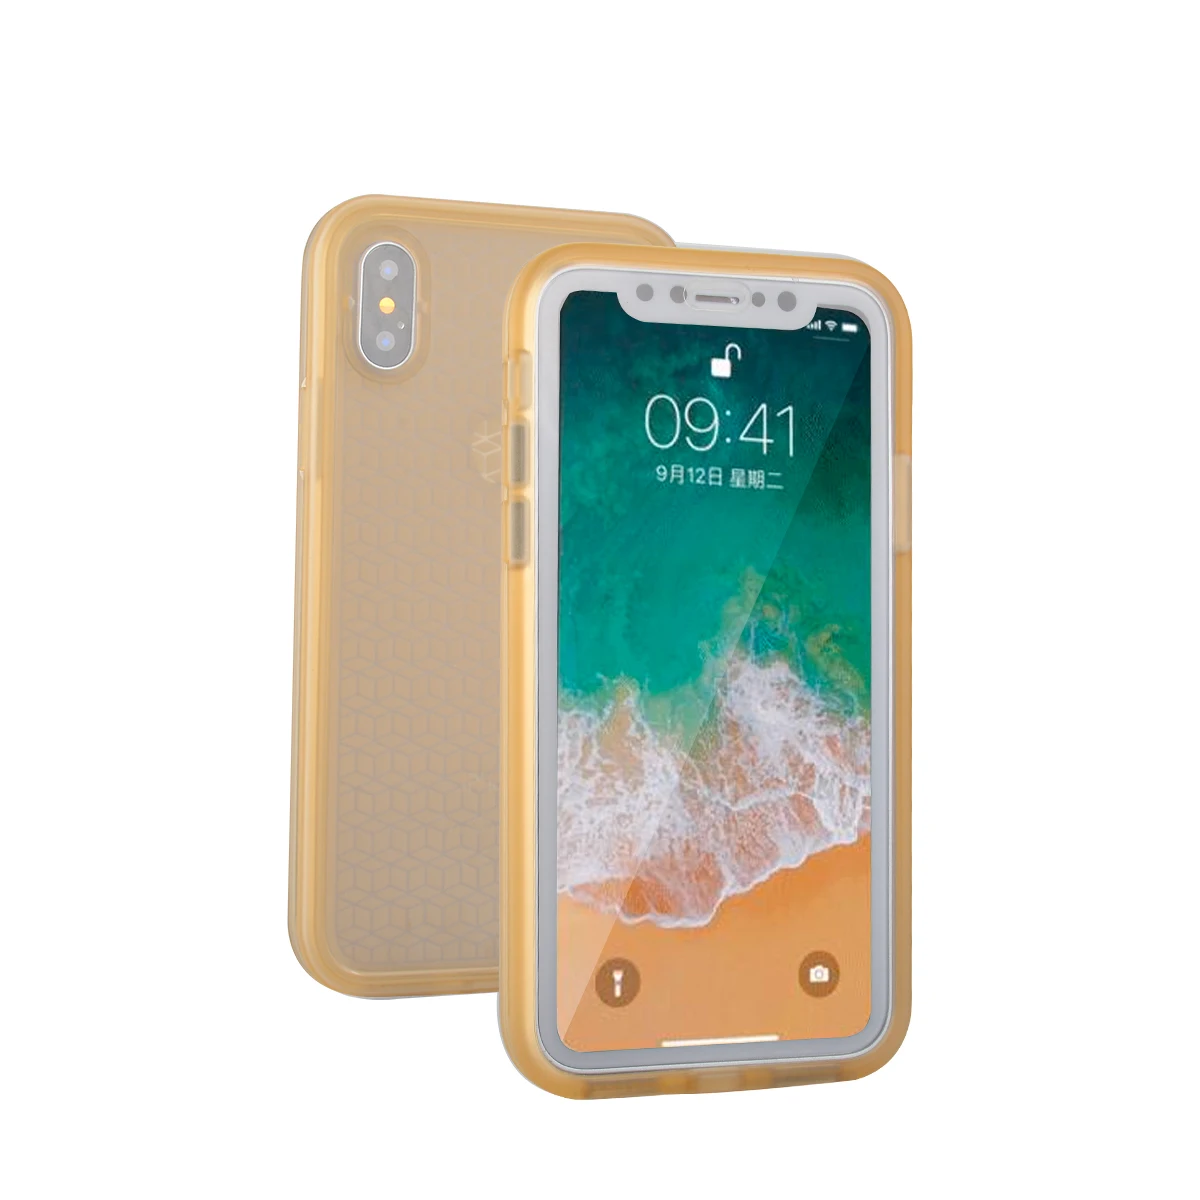 IP68 настоящий водонепроницаемый чехол для телефона для iPhone X, 8, 7 Plus, 6, 6S Plus, полная защита, чехол под водой для iPhone 5, 5S, XR, XS Max - Цвет: Золотой